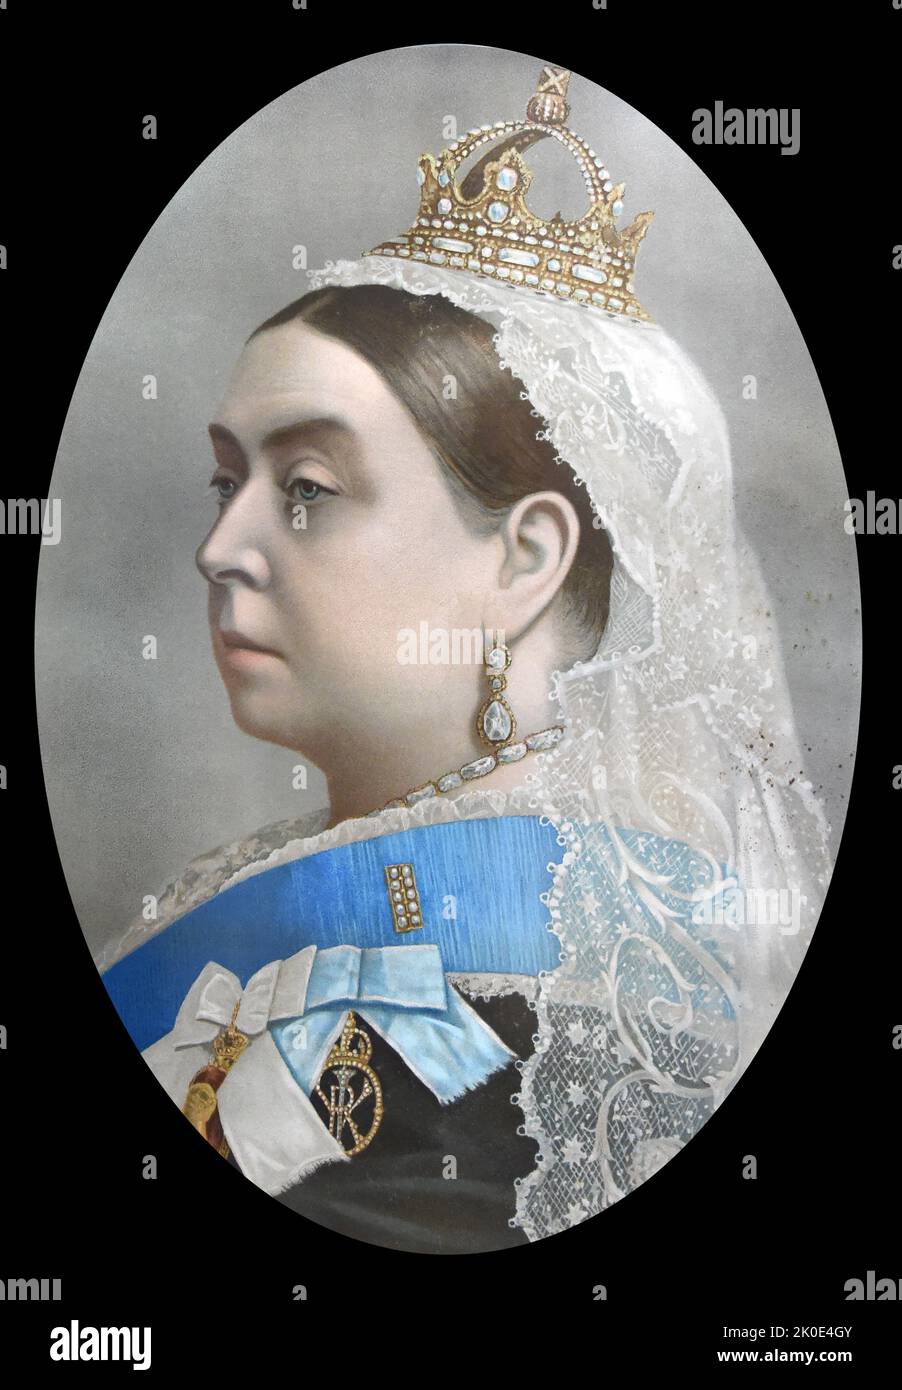 Victoria, Reine du Royaume-Uni de Grande-Bretagne et d'Irlande de 1837 à sa mort en 1901. Elle a adopté le titre additionnel d'impératrice de l'Inde le 1 mai 1876. Connu sous le nom d'ère victorienne, son règne de 63 ans et sept mois a été plus long que celui de n'importe lequel de ses prédécesseurs. Banque D'Images